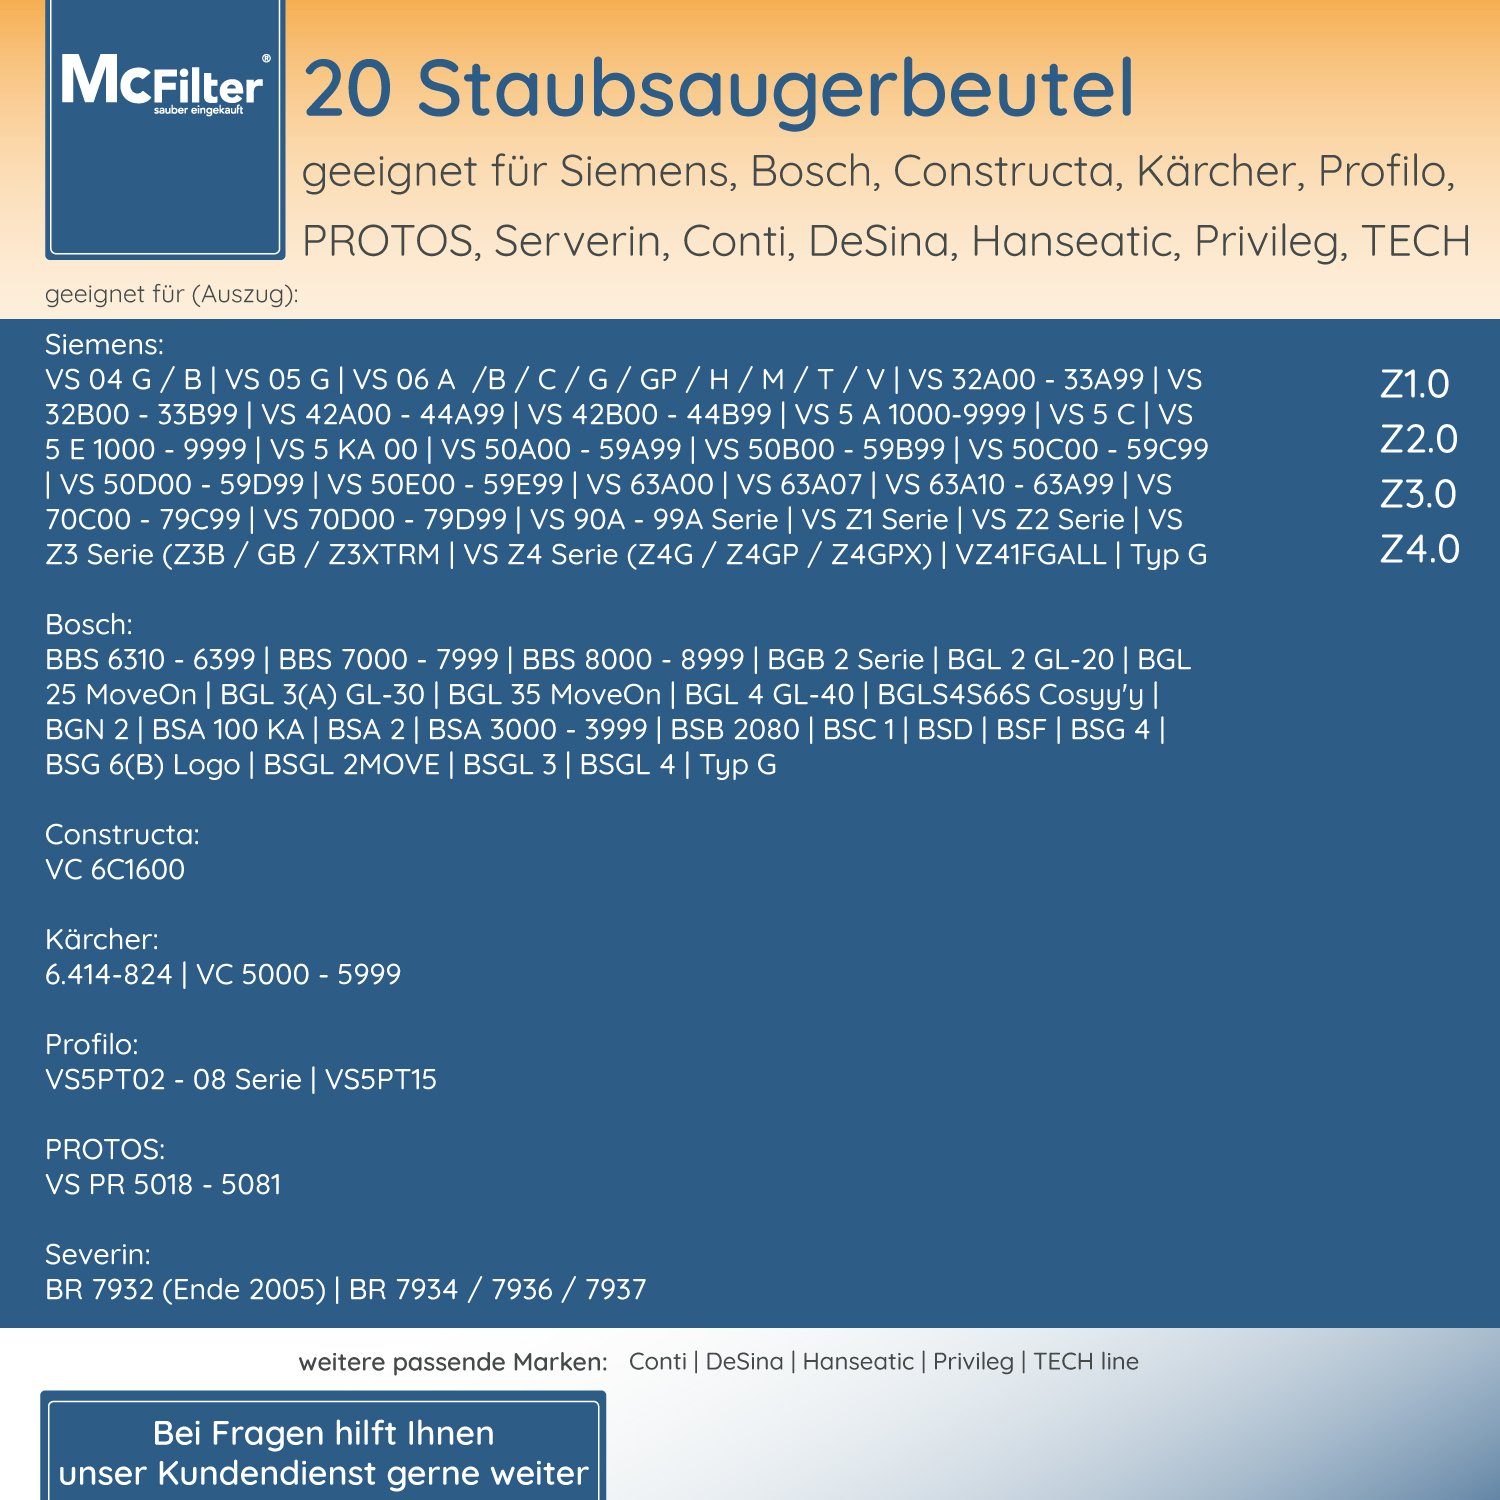 BBZ41FGALL Hygieneverschluss, (20 17000940), Filter Type G - (Nr. 20 Staubbeutel für inkl. mit Stück), McFilter passend St., Bosch 5-lagiger ALL Staubsaugerbeutel